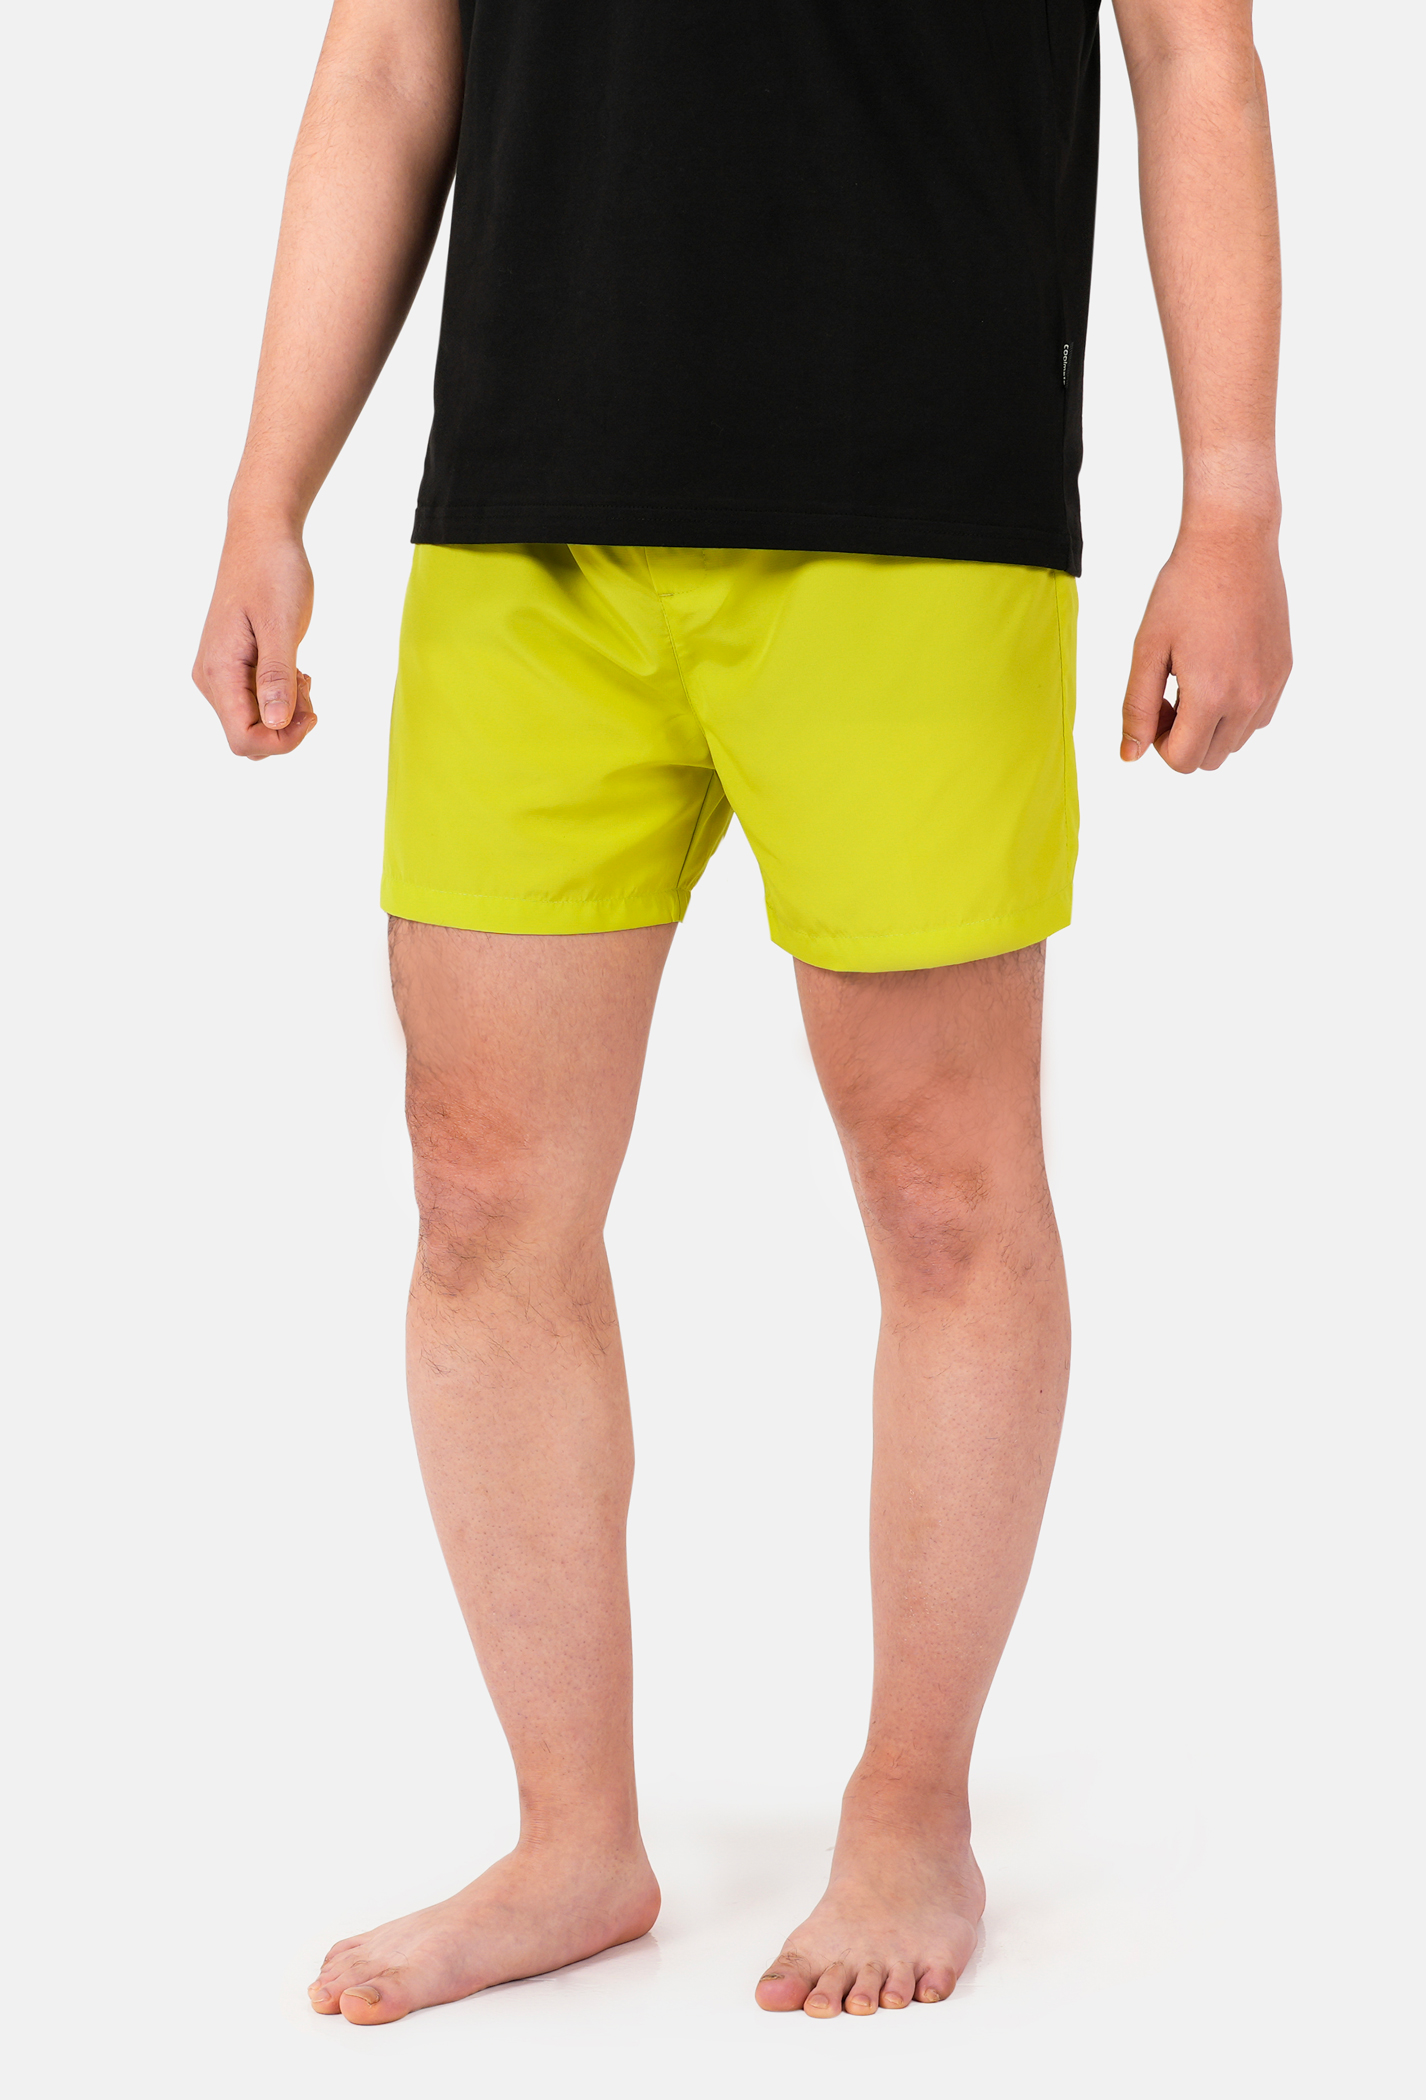 SĂN DEAL - Quần Shorts mặc nhà Coolmate Basics - Vàng chanh Vàng chanh 2